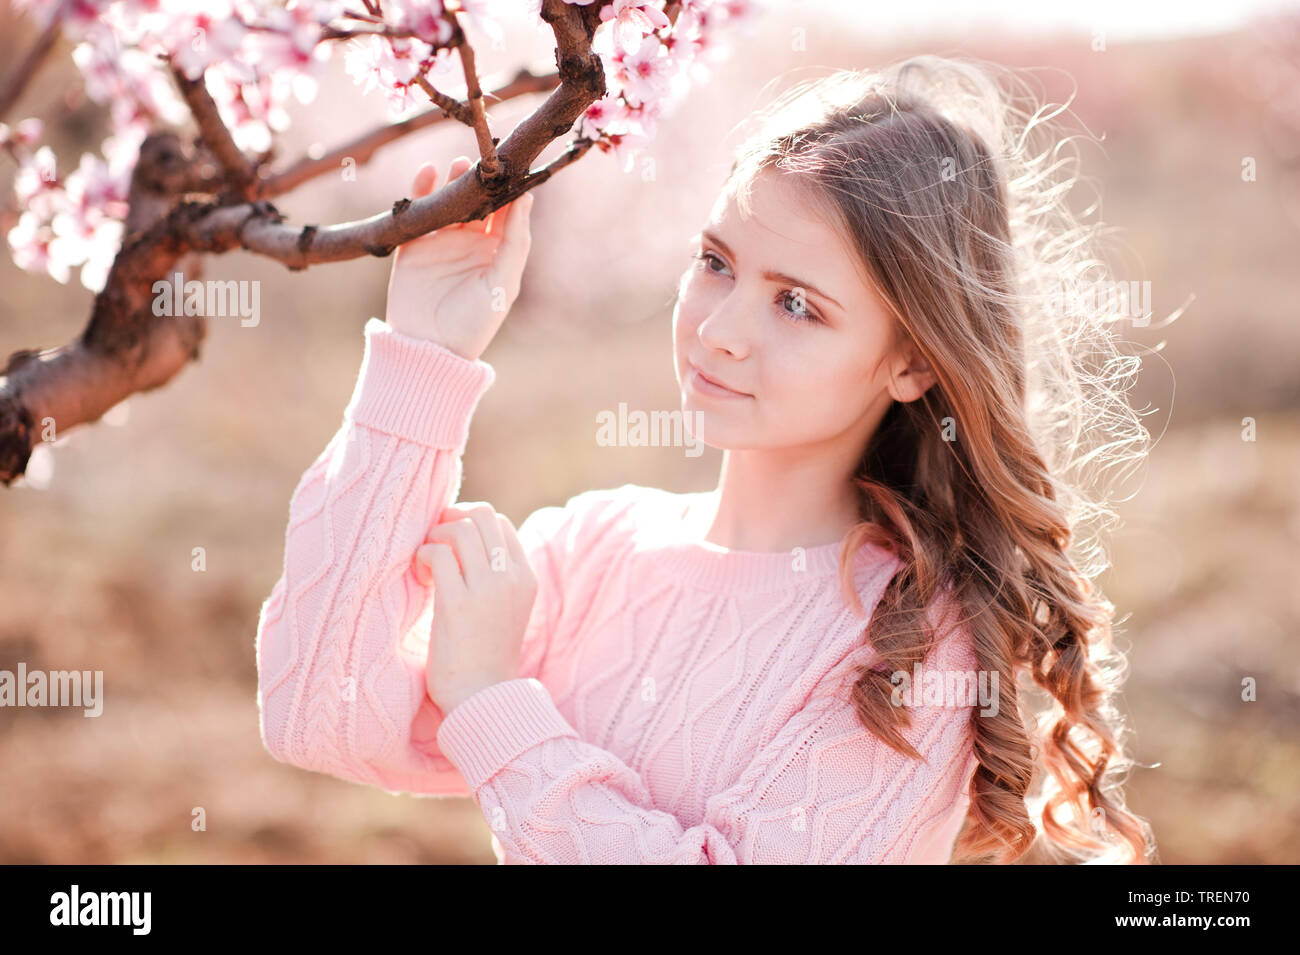 Schönes blondes junges Mädchen 14-16 Jahre alten Holding pfirsich Baum im Garten. Posing im Freien. Gestrickte Pullover tragen. Weg schauen. Stockfoto